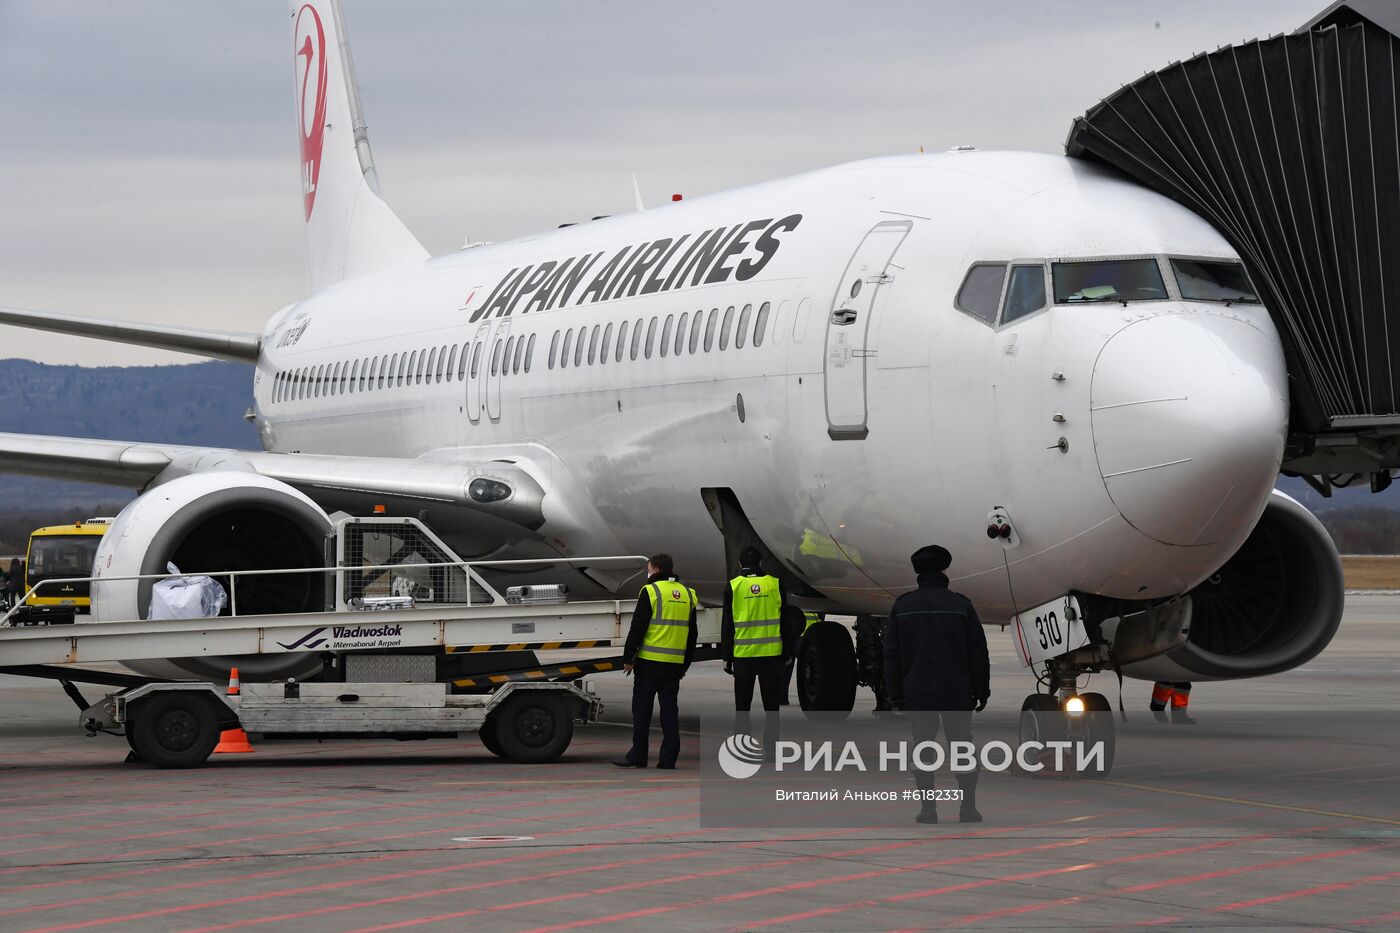 Японская авиакомпания JAL запустила прямые регулярные рейсы во Владивосток